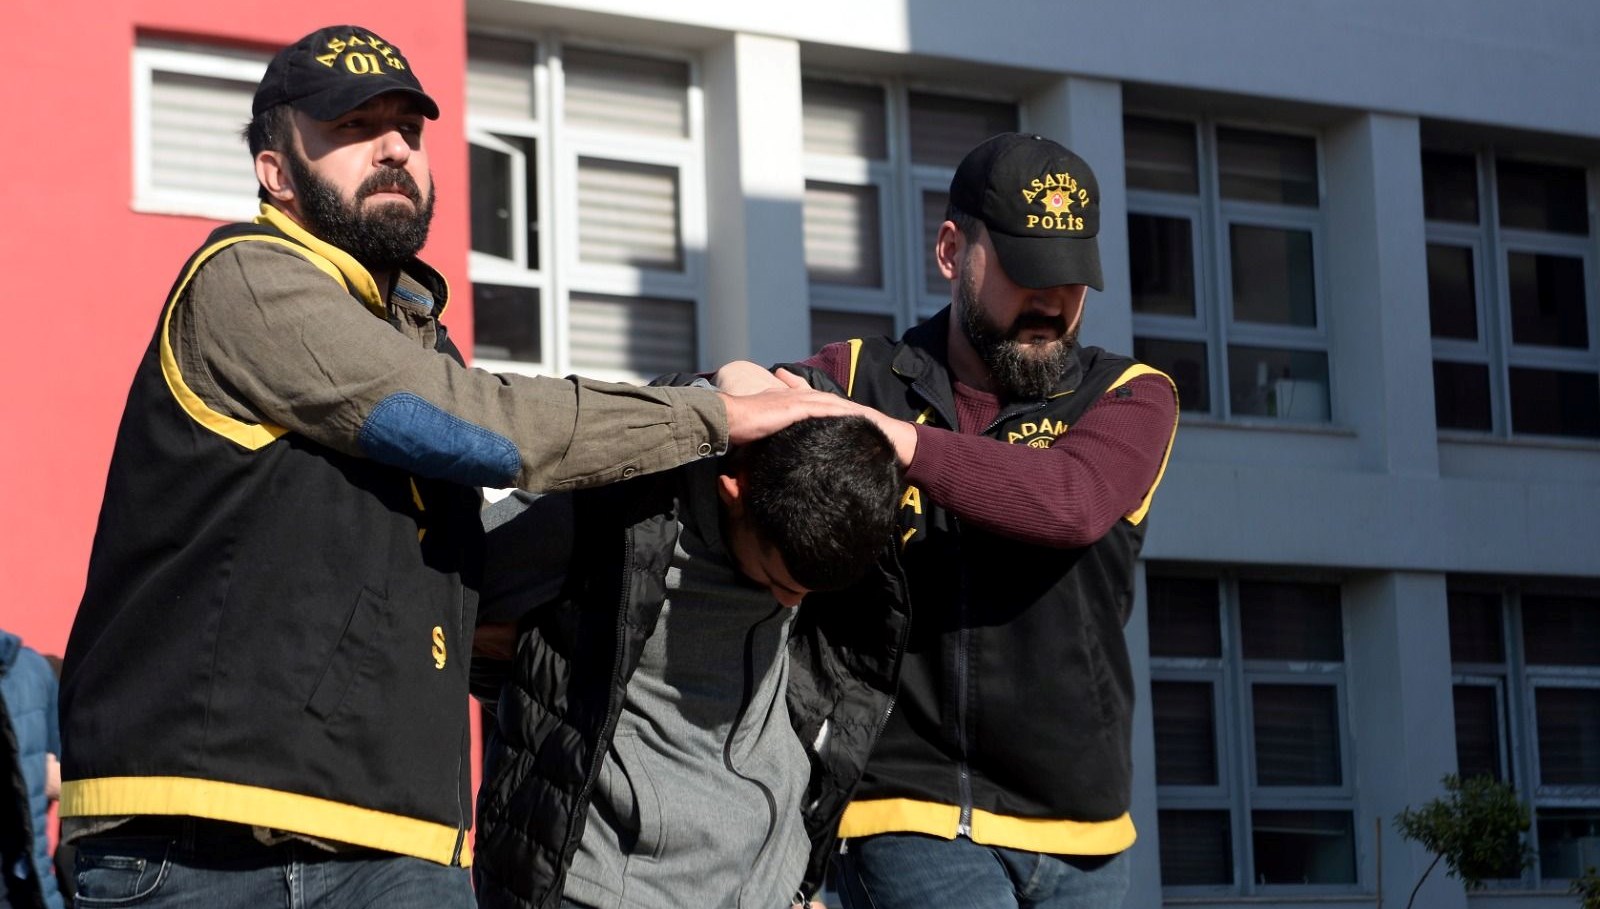 Adana’da “Garson bakar mısın” cinayeti: 3 sanığa 18’er yıl hapis cezası